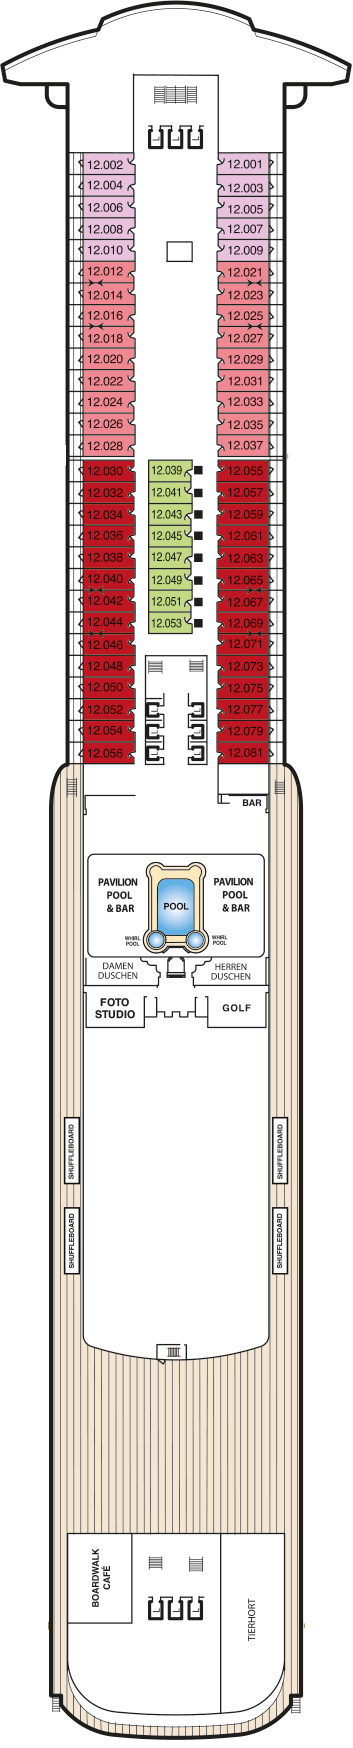 Queen Mary 2 - Decksplan Deck 12